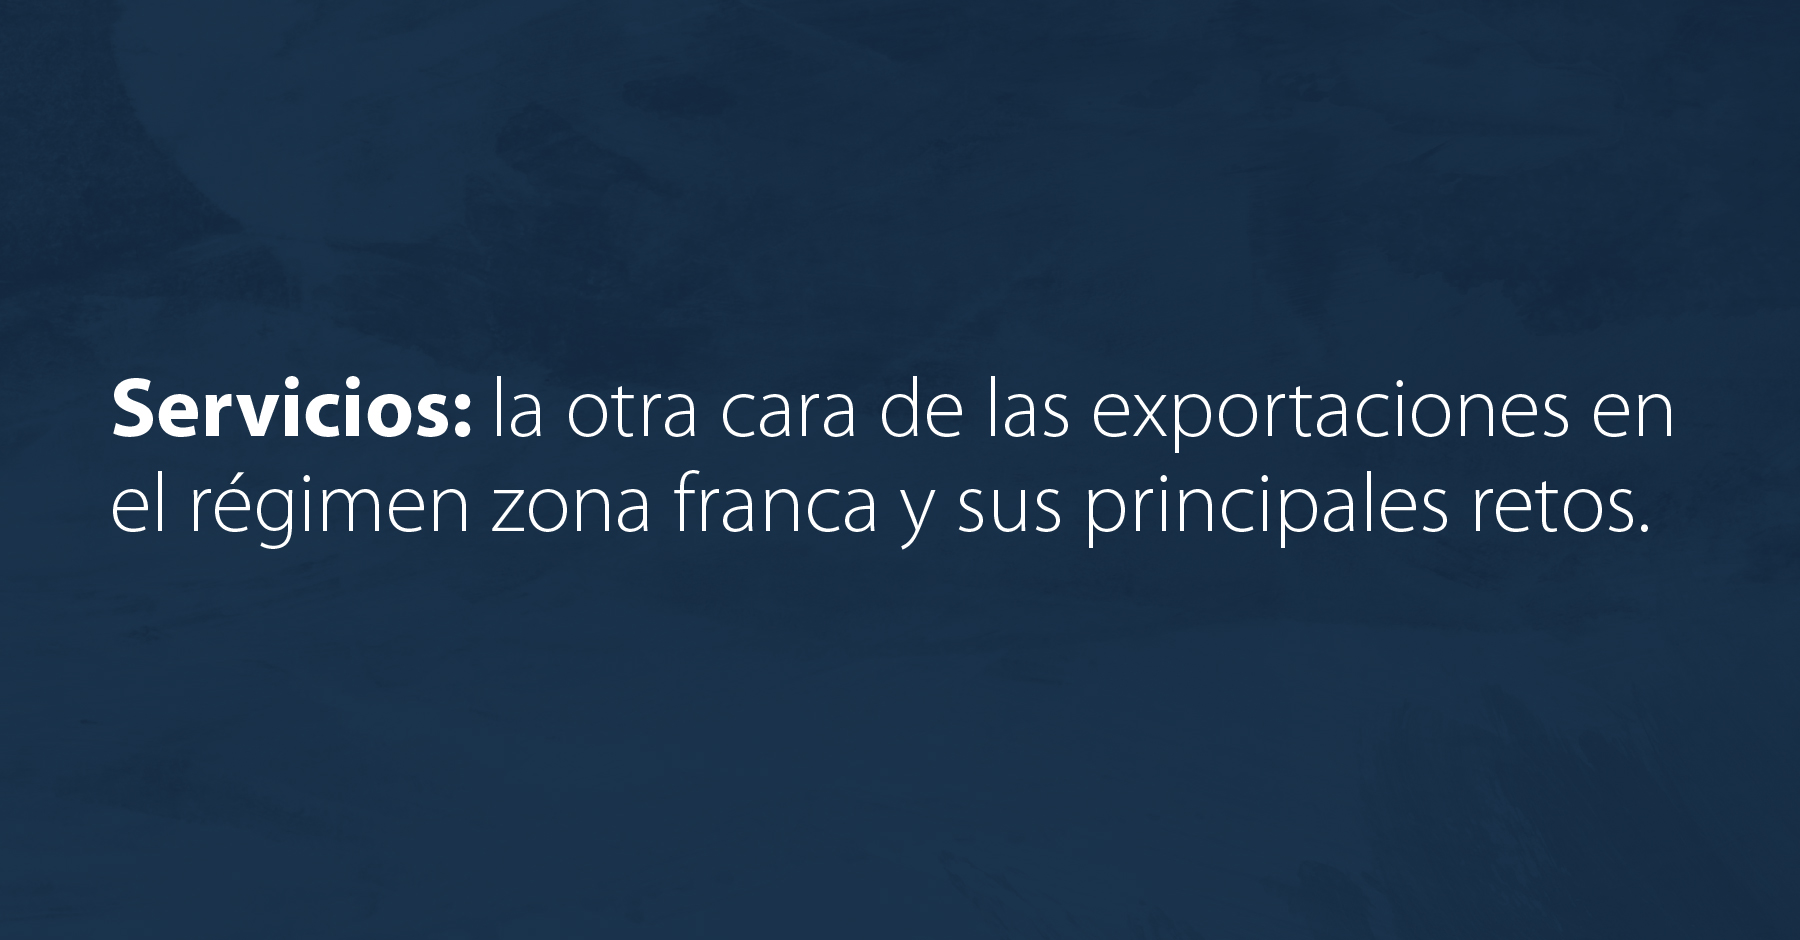 Servicios: la otra cara de las exportaciones en el régimen zona franca y sus principales retos.